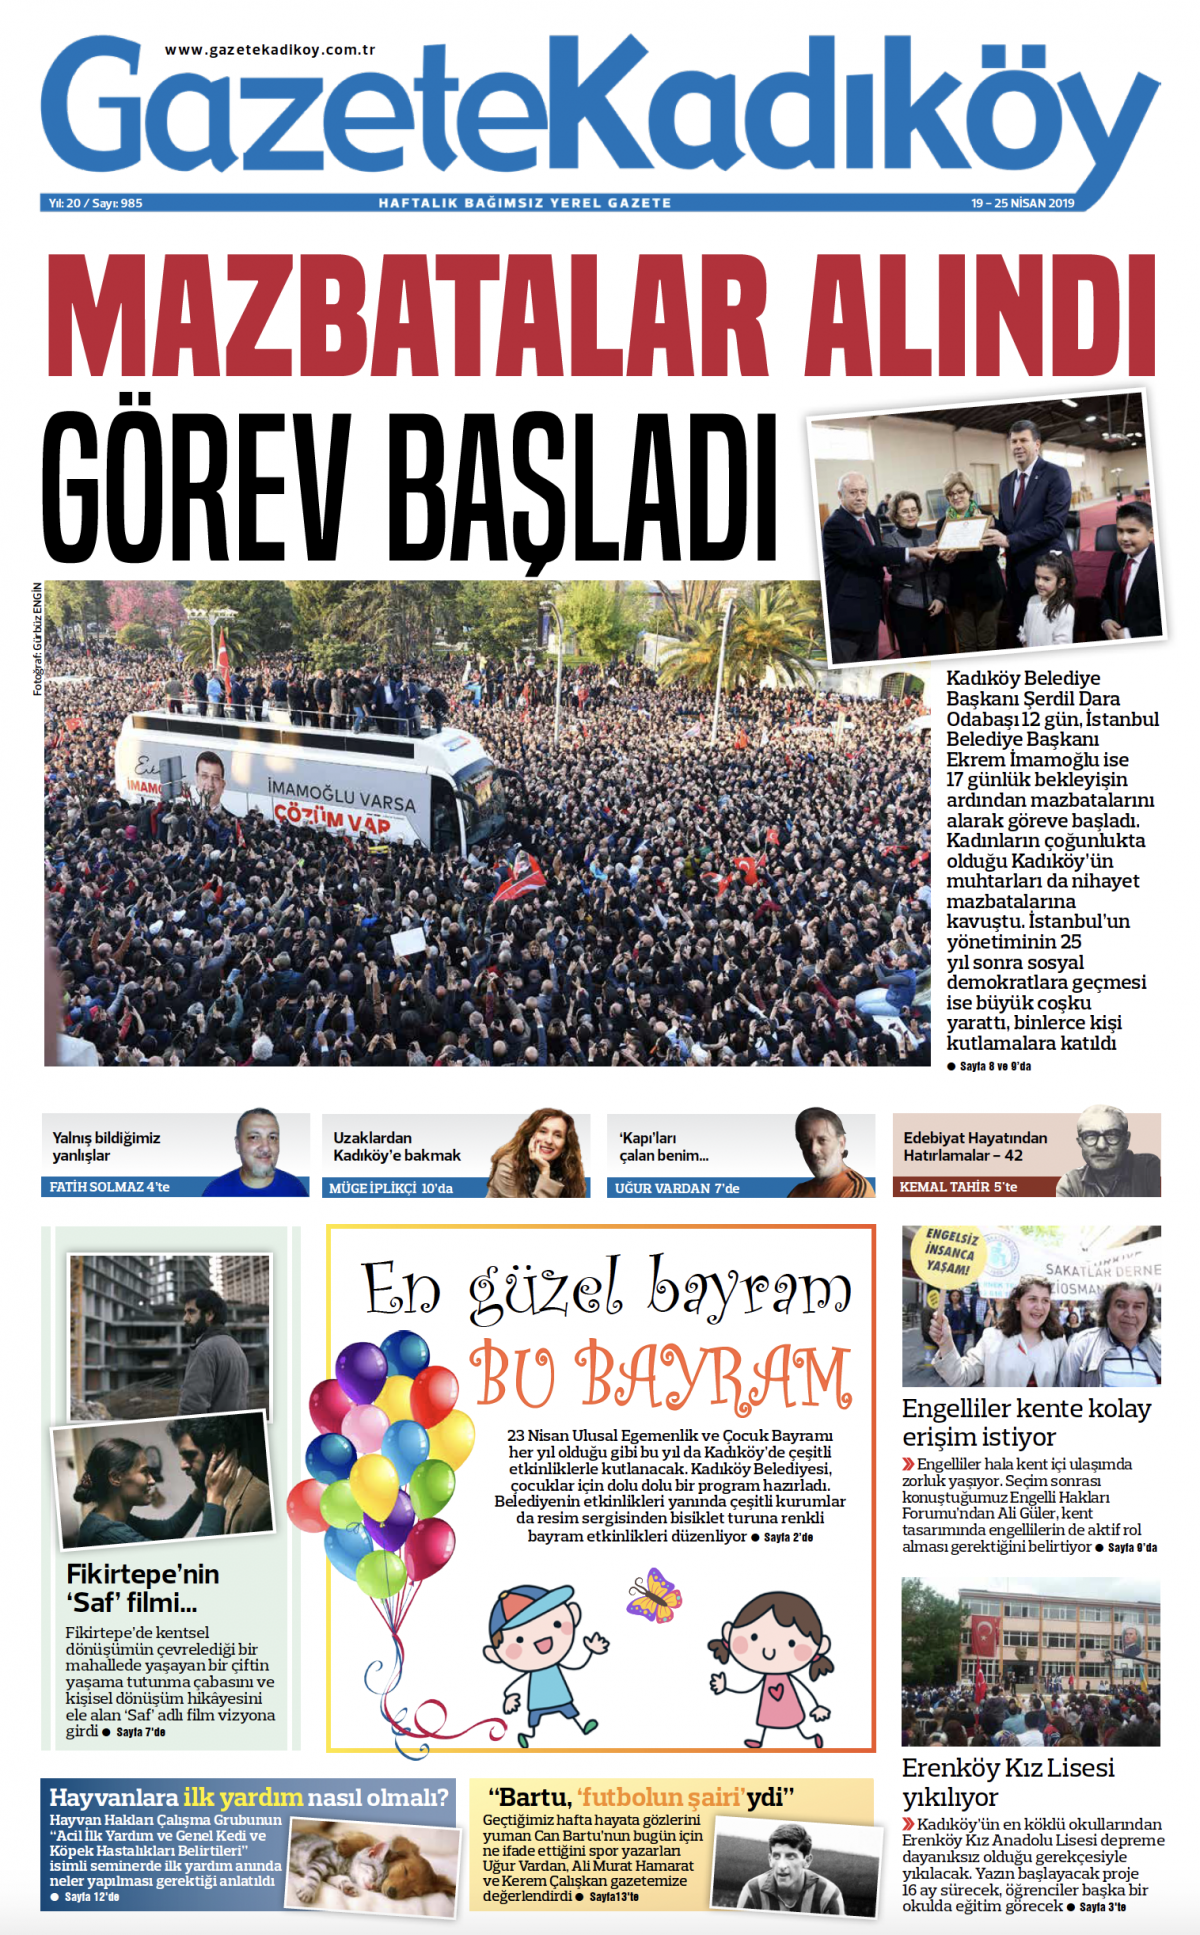 Gazete Kadıköy - 985. Sayı